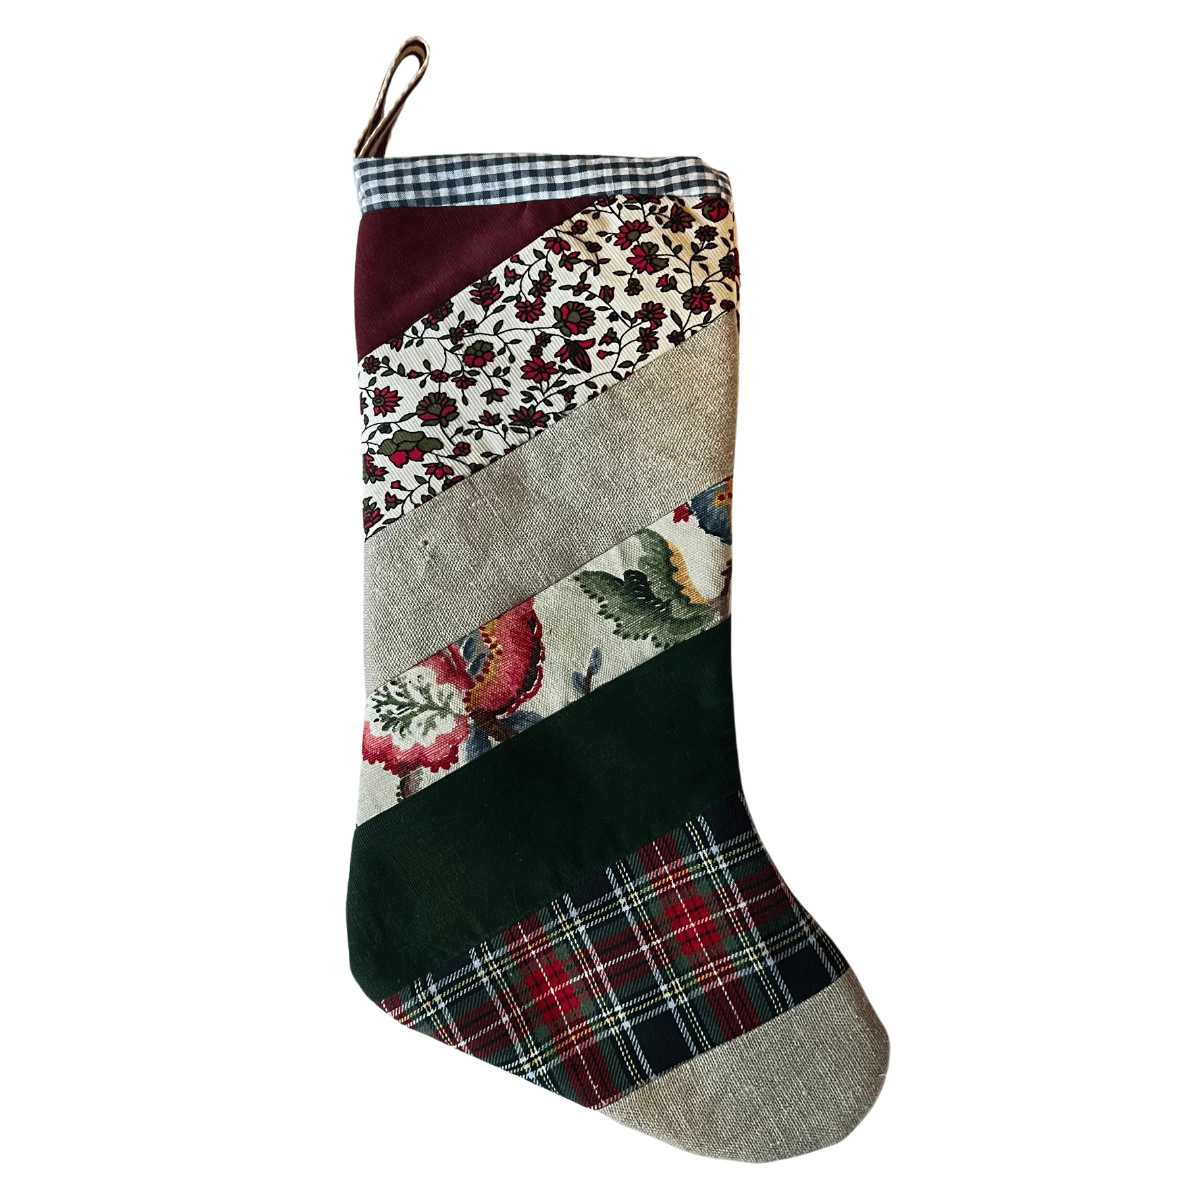 Handmade patchwork and velvet Christmas stocking